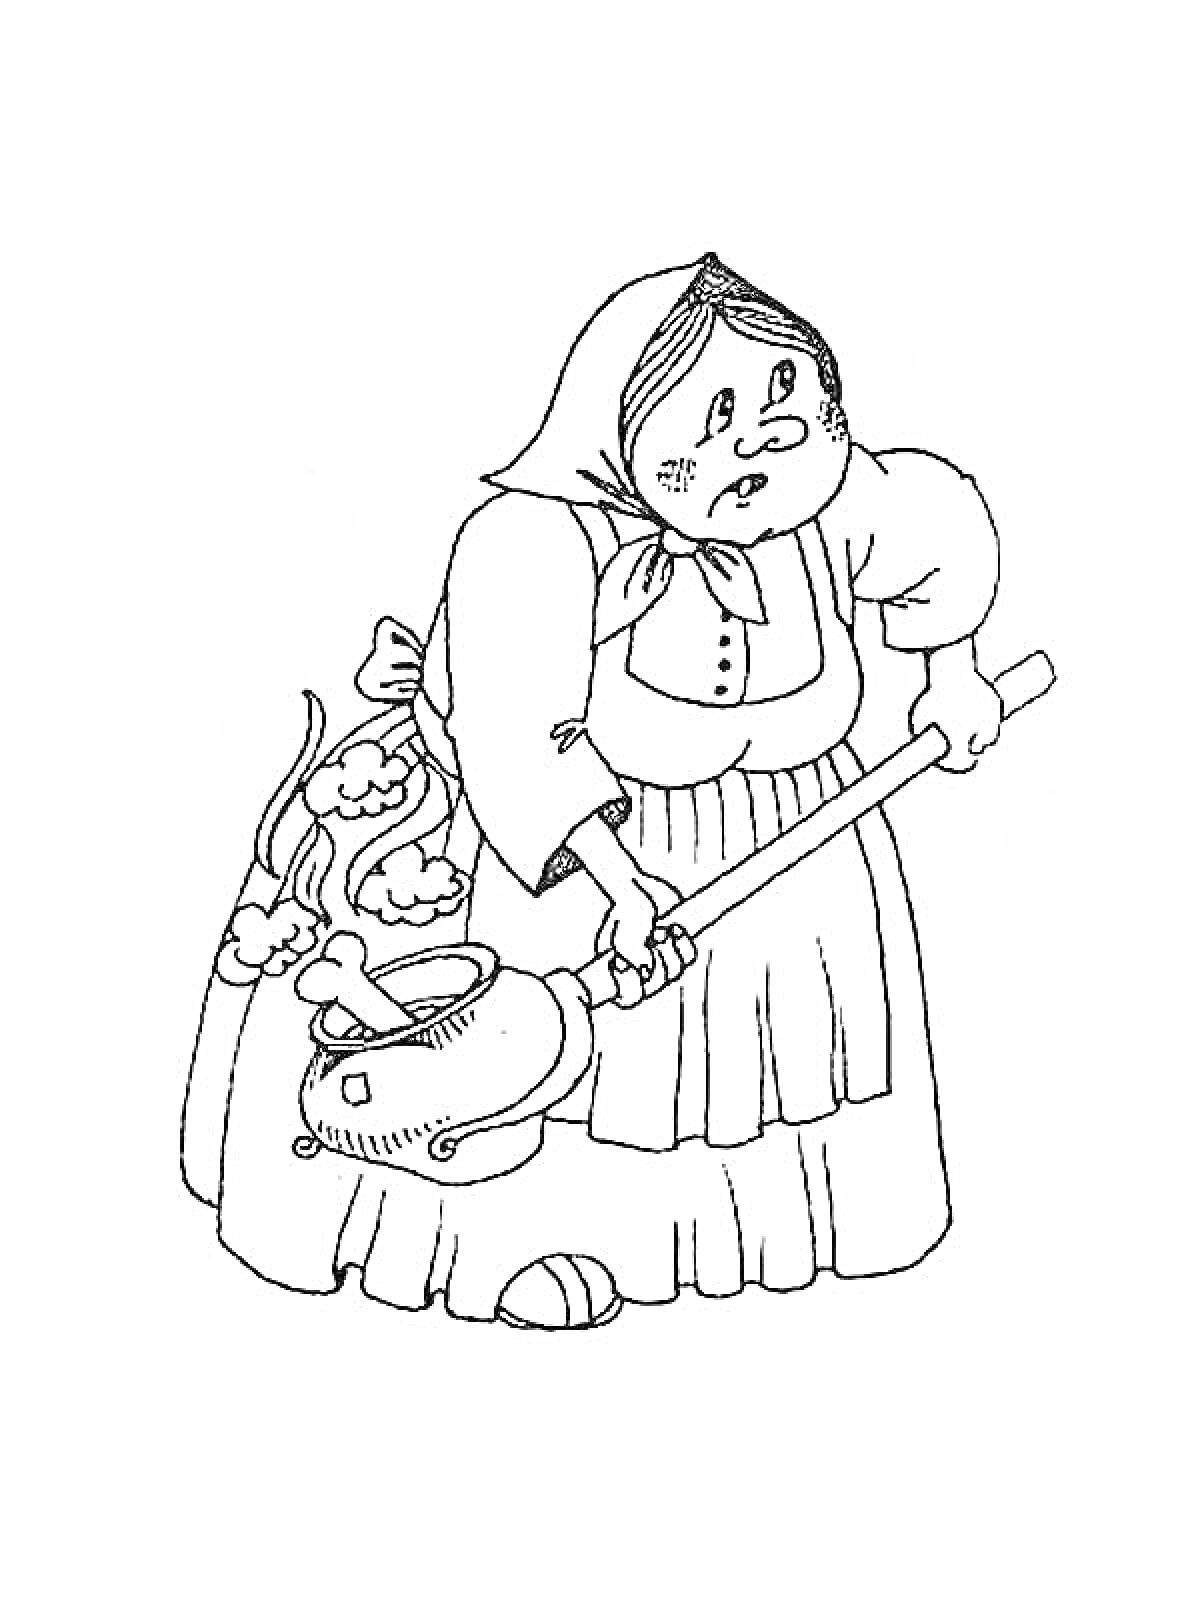  Старушка с половником и убегающей посудой из сказки 